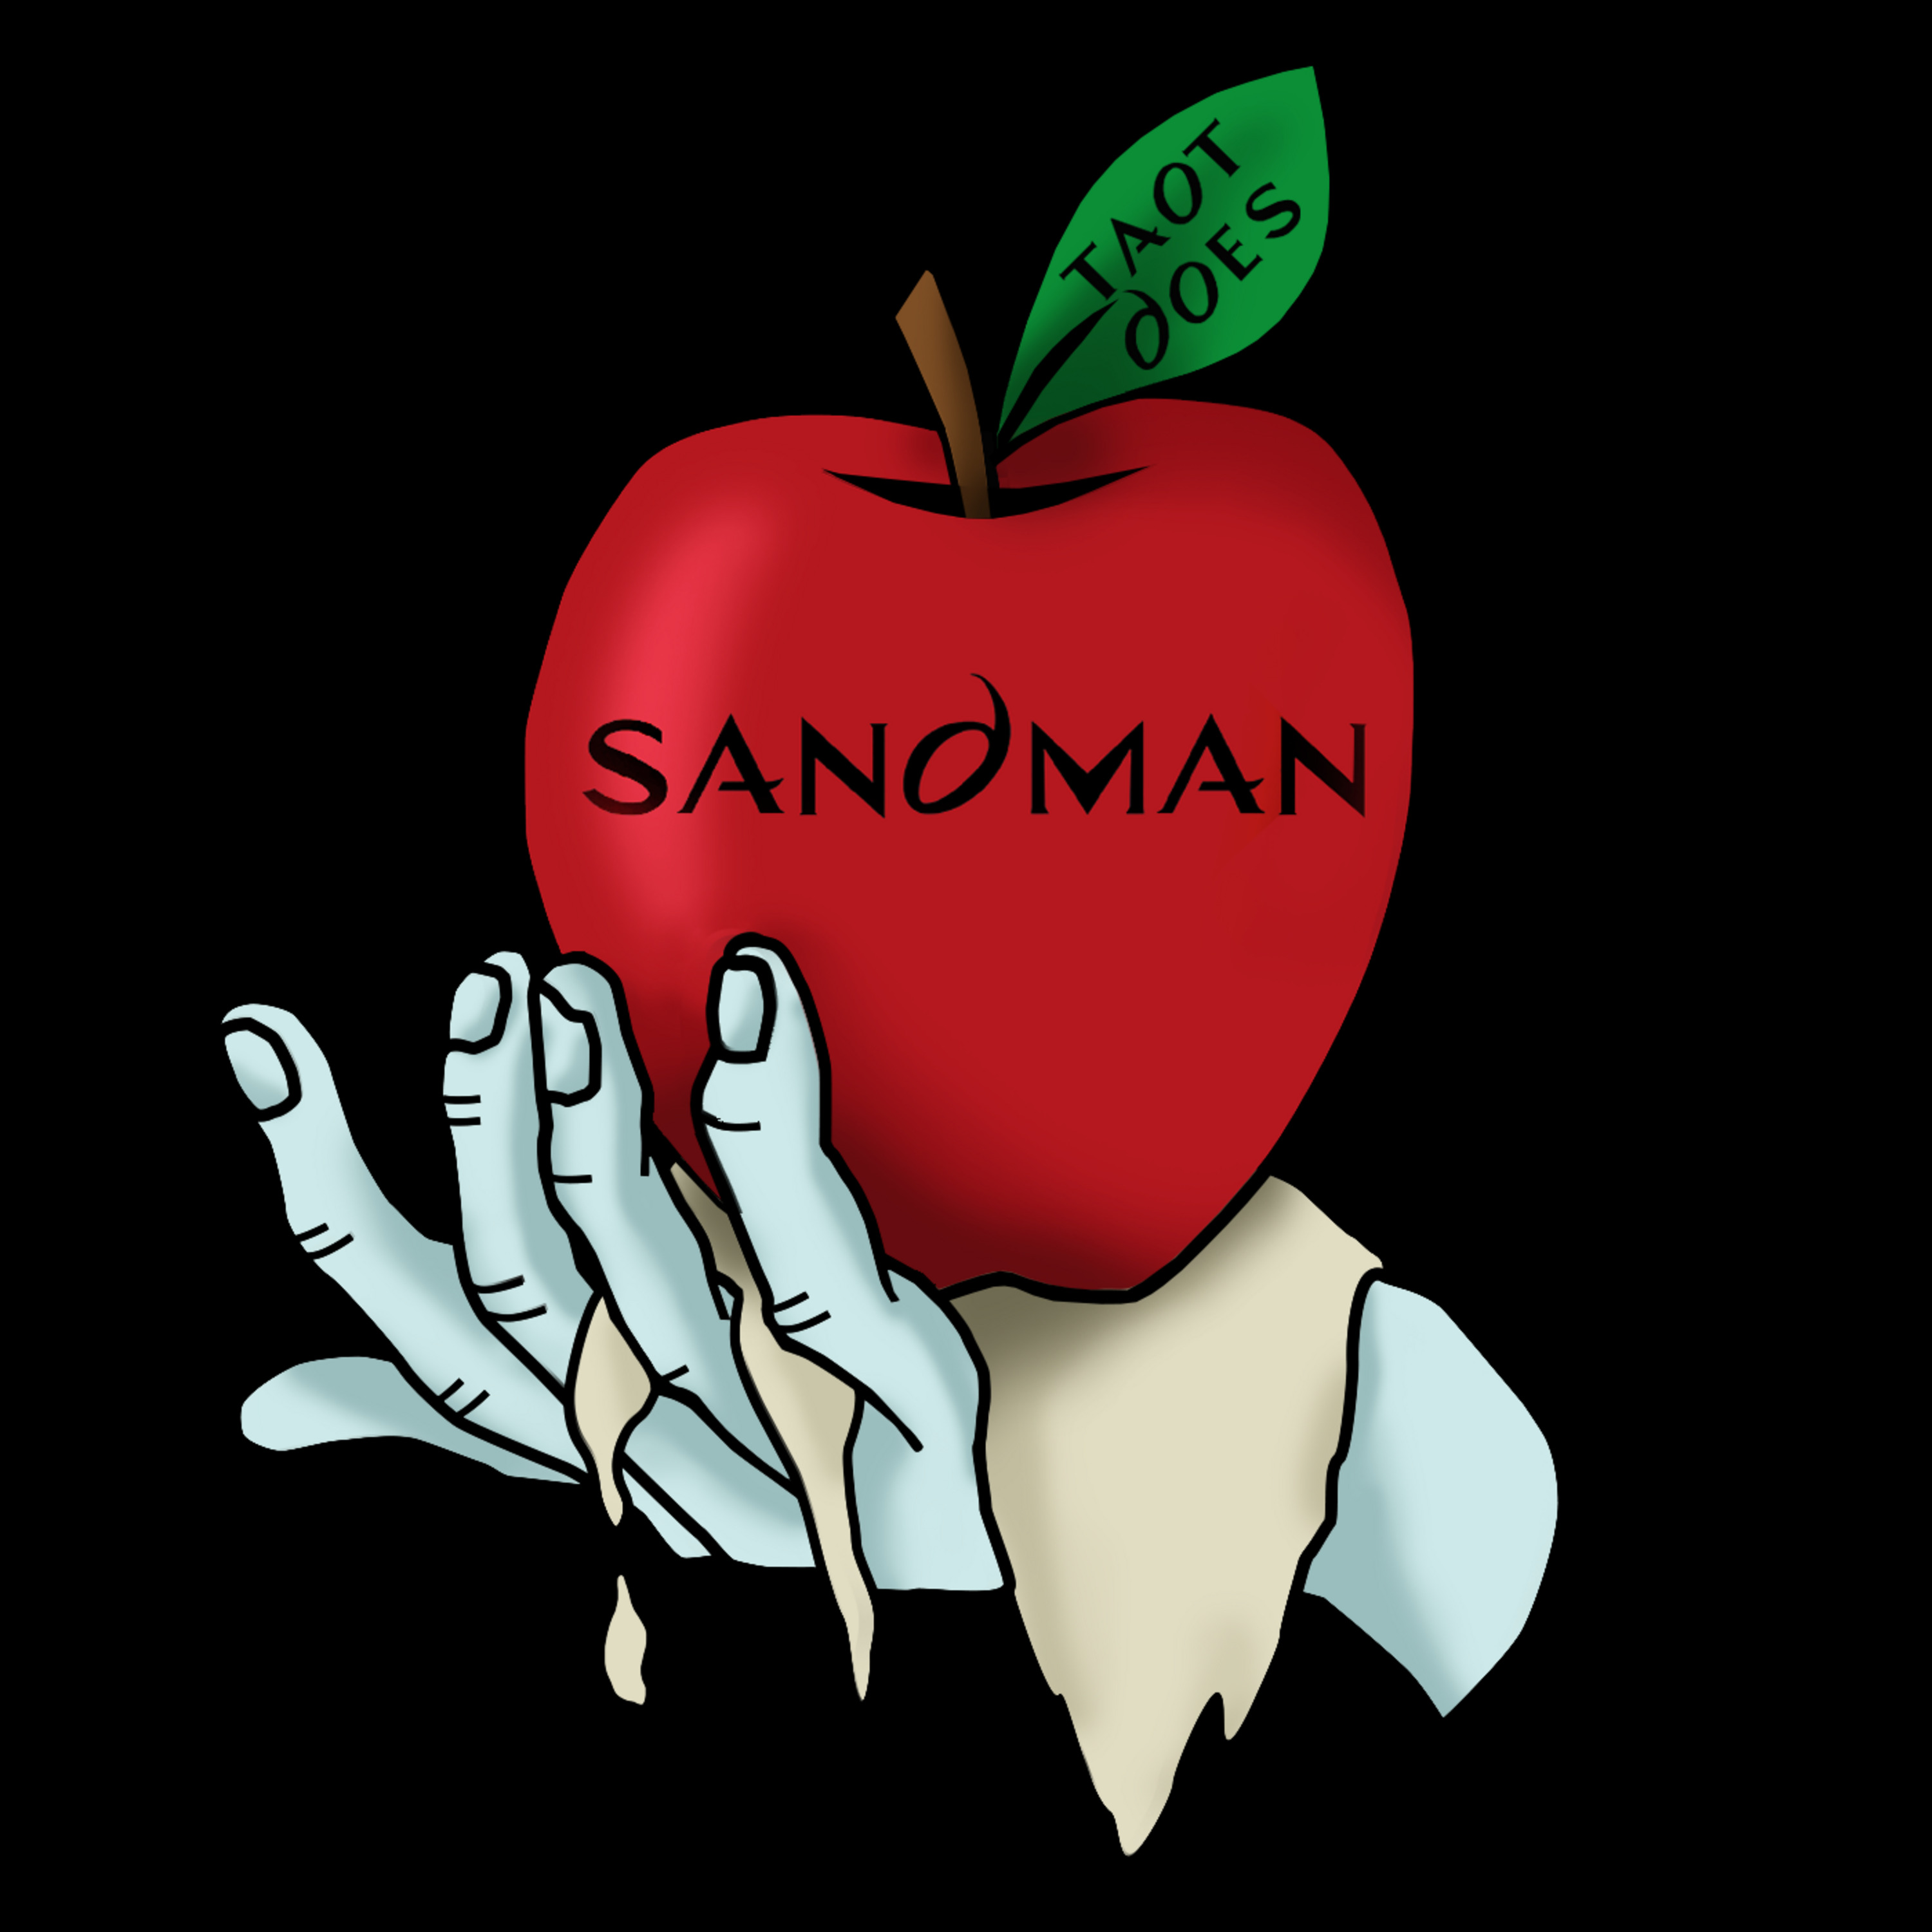 Episode 140: TAOT The Sandman S1E07